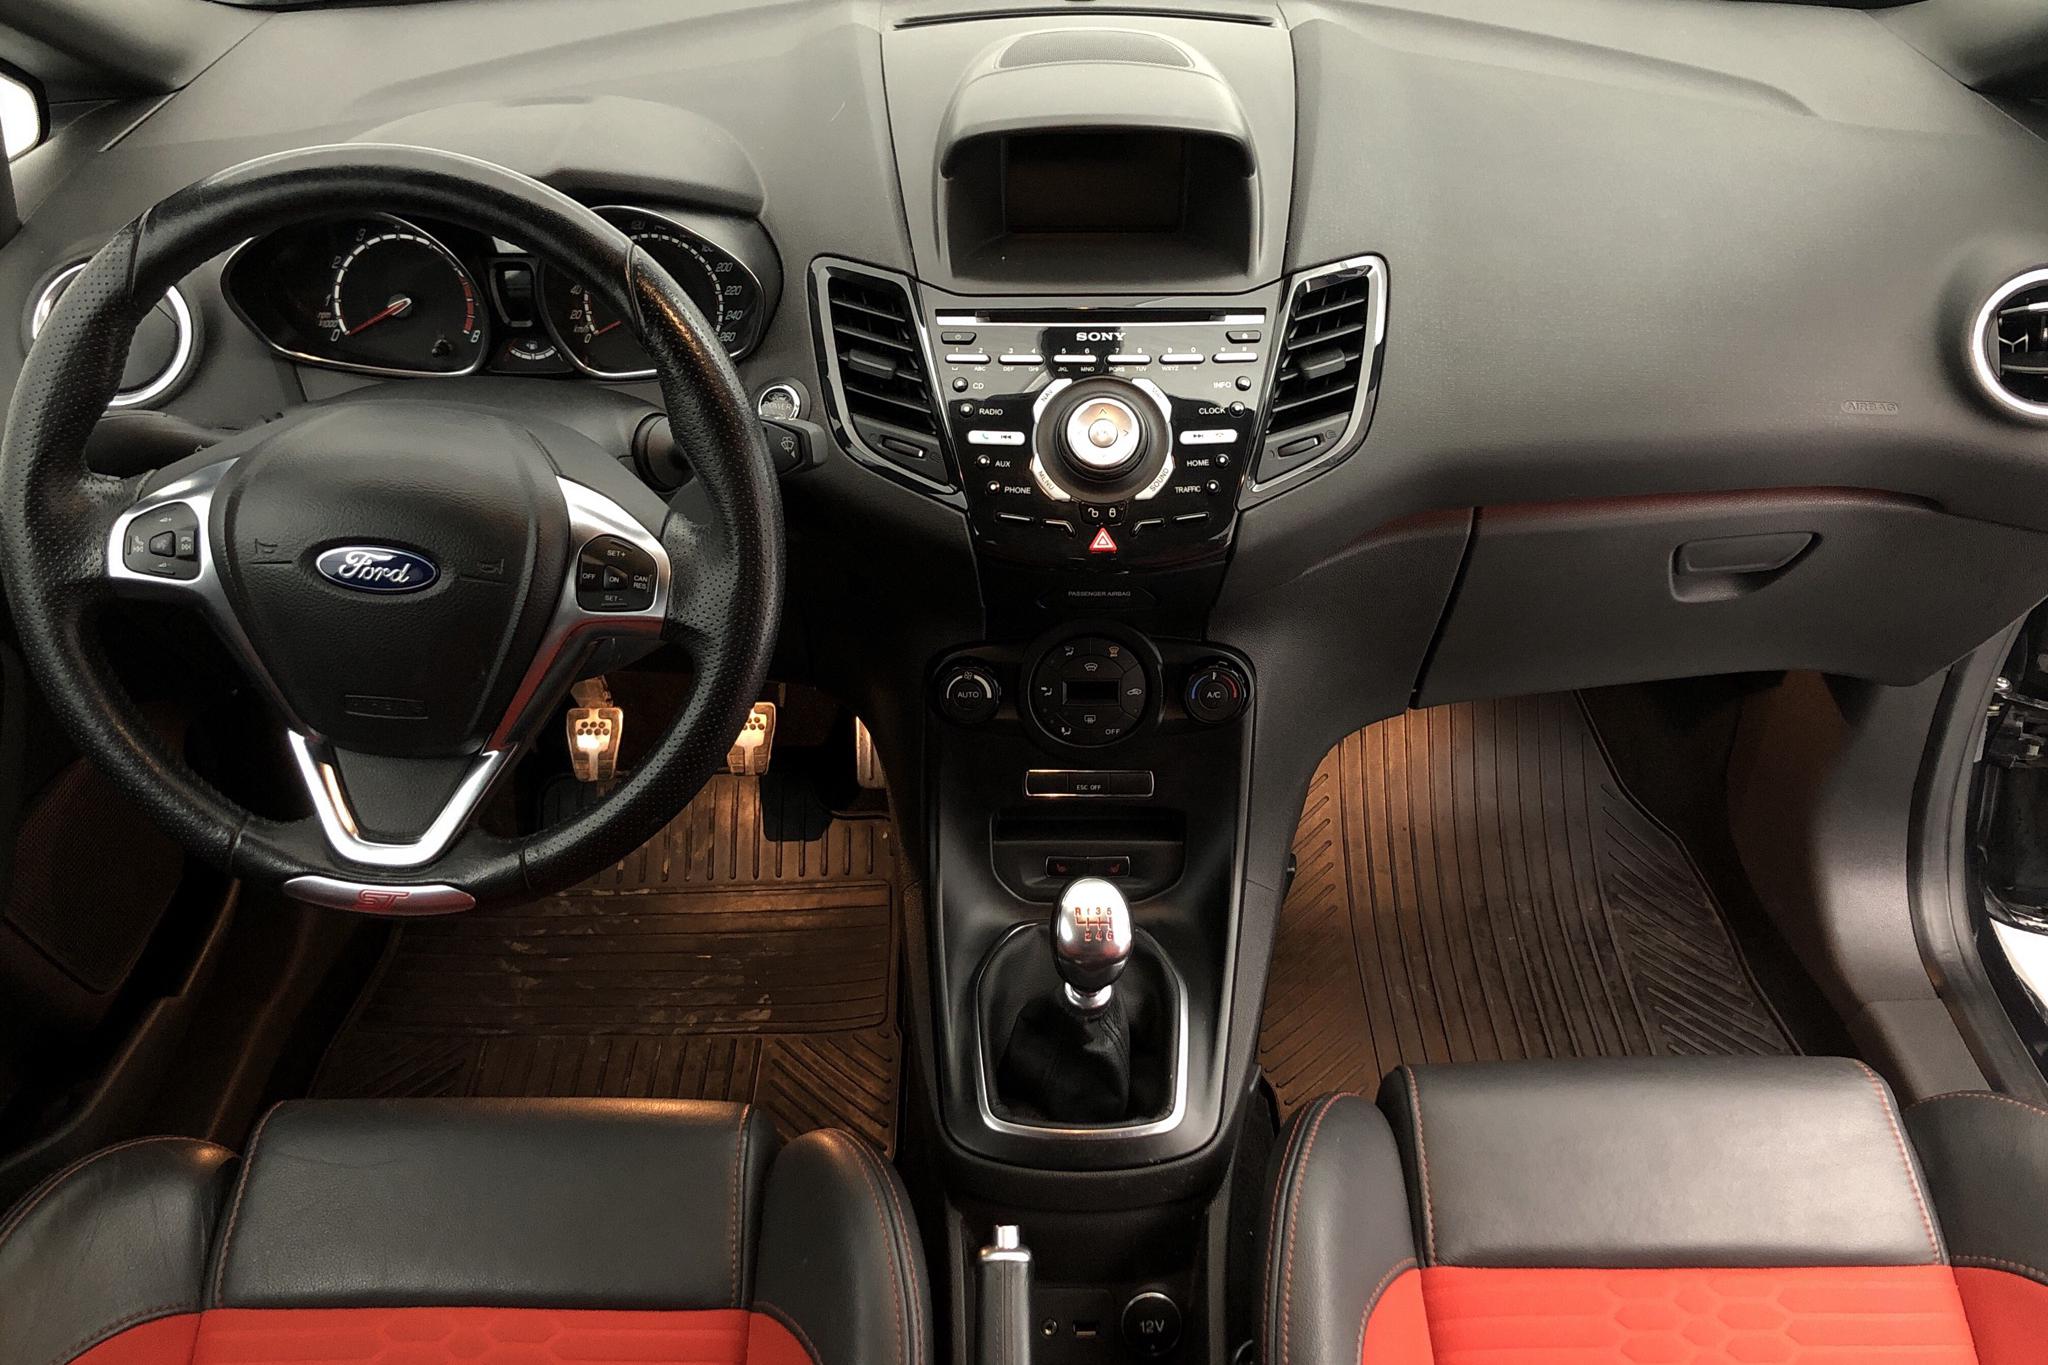 Ford Fiesta 1.6 ST 3dr (182hk) - 10 799 mil - Manuell - svart - 2015